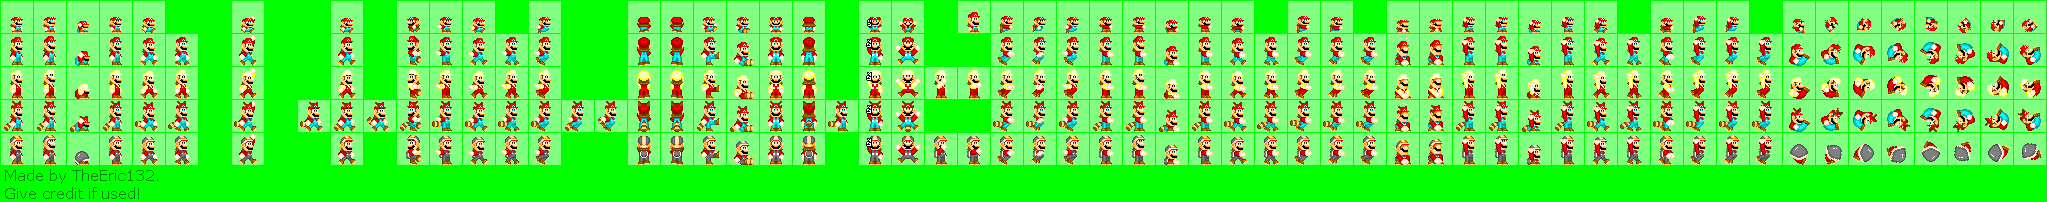 Mario Customs - Mario